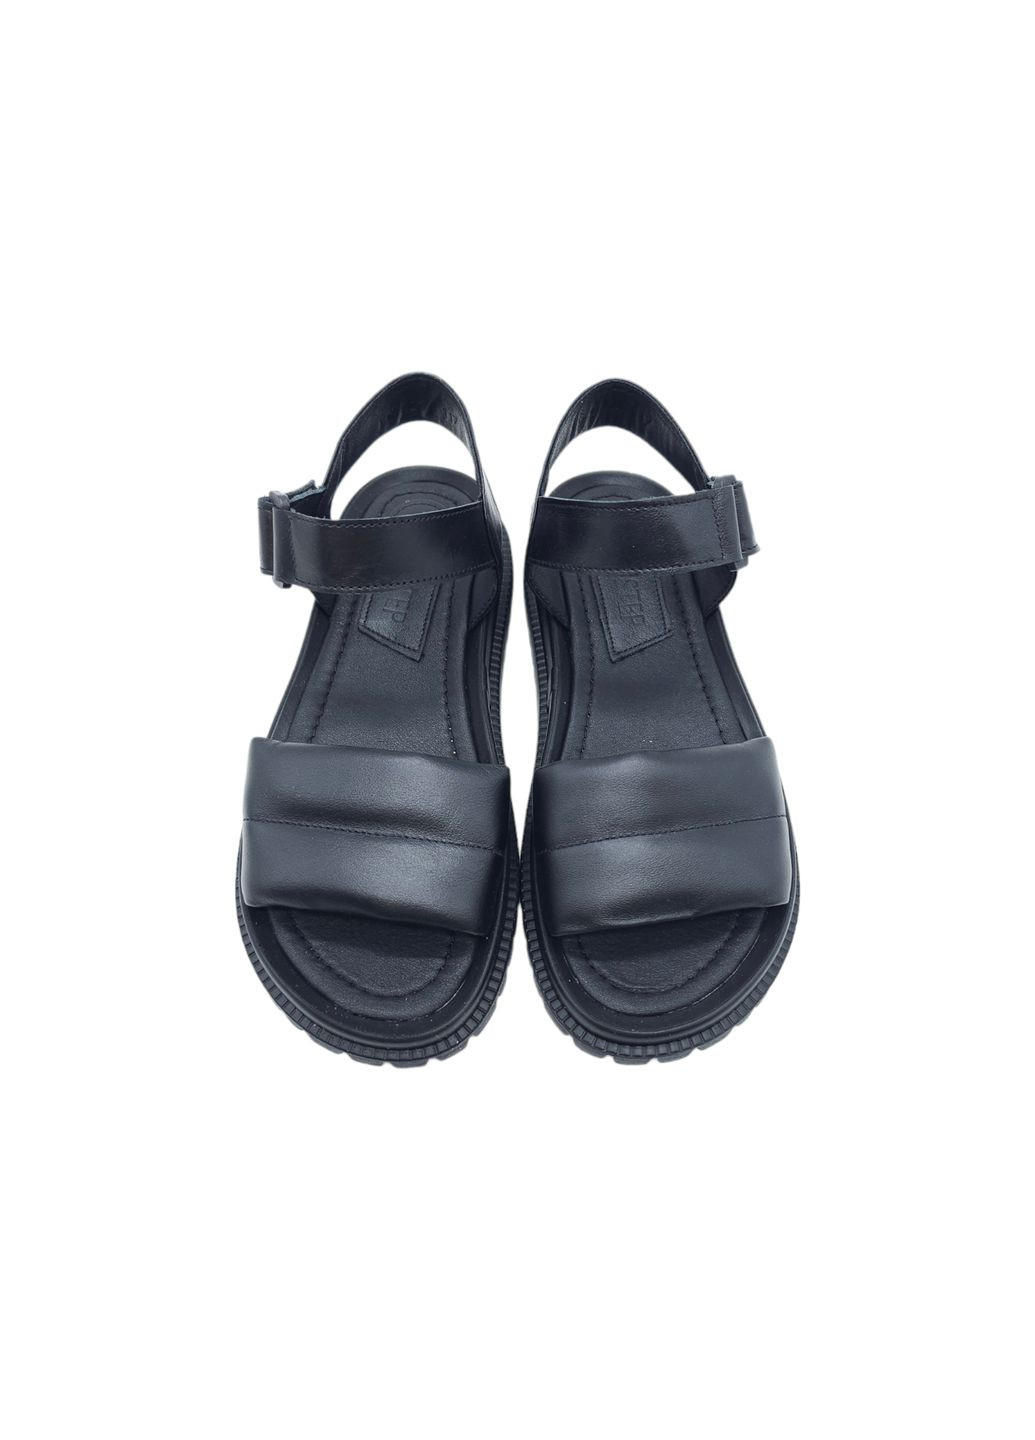 Жіночі босоніжки чорні шкіряні FS-18-24 23 см (р) Foot Step (292401638)